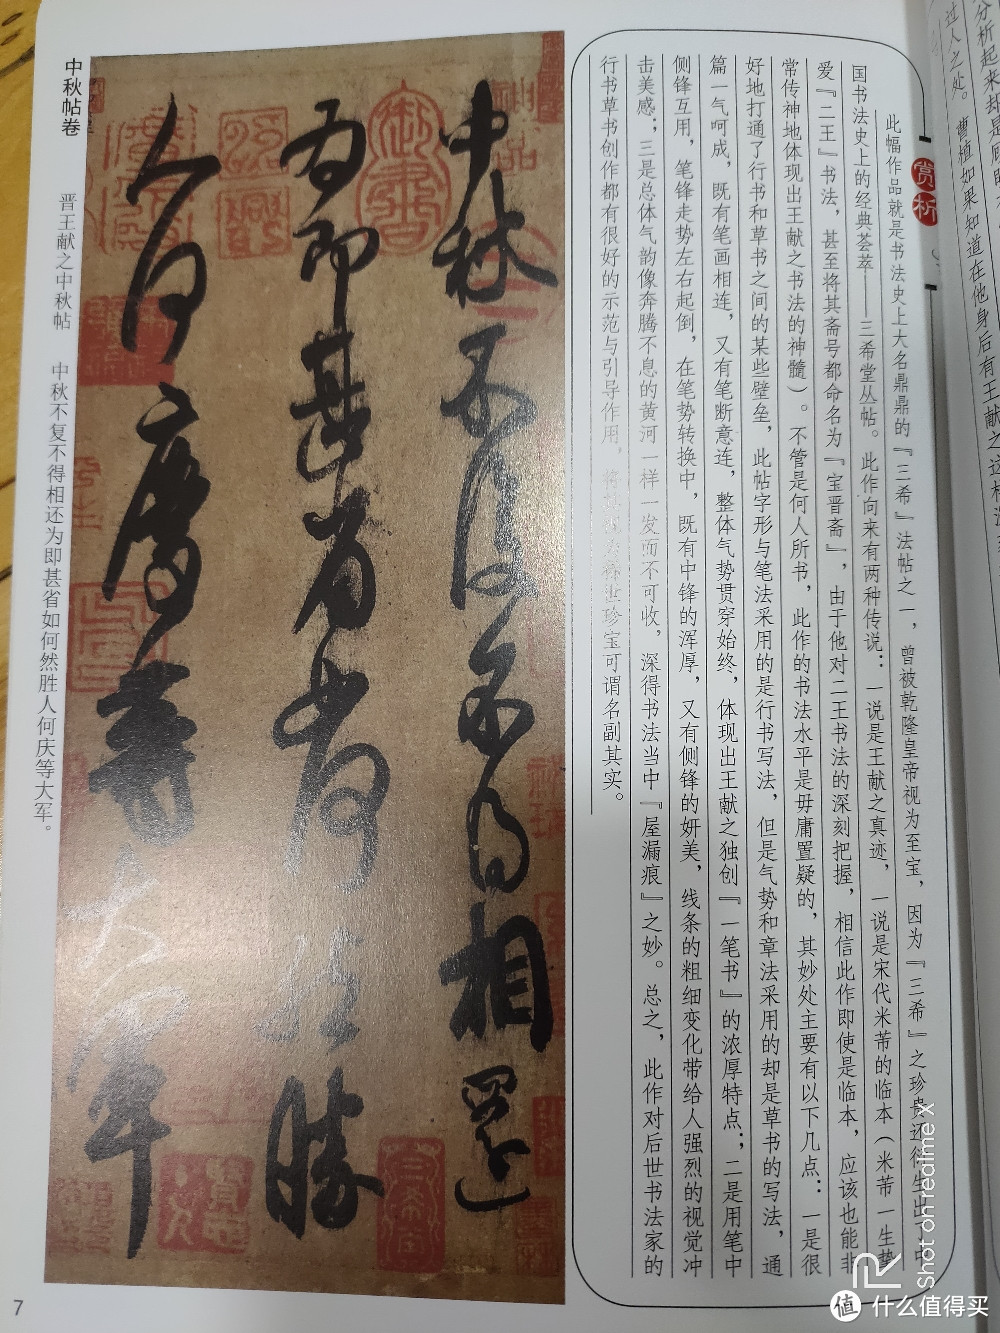 毛笔书法字帖套装:《中国历代名家书法名贴》介绍